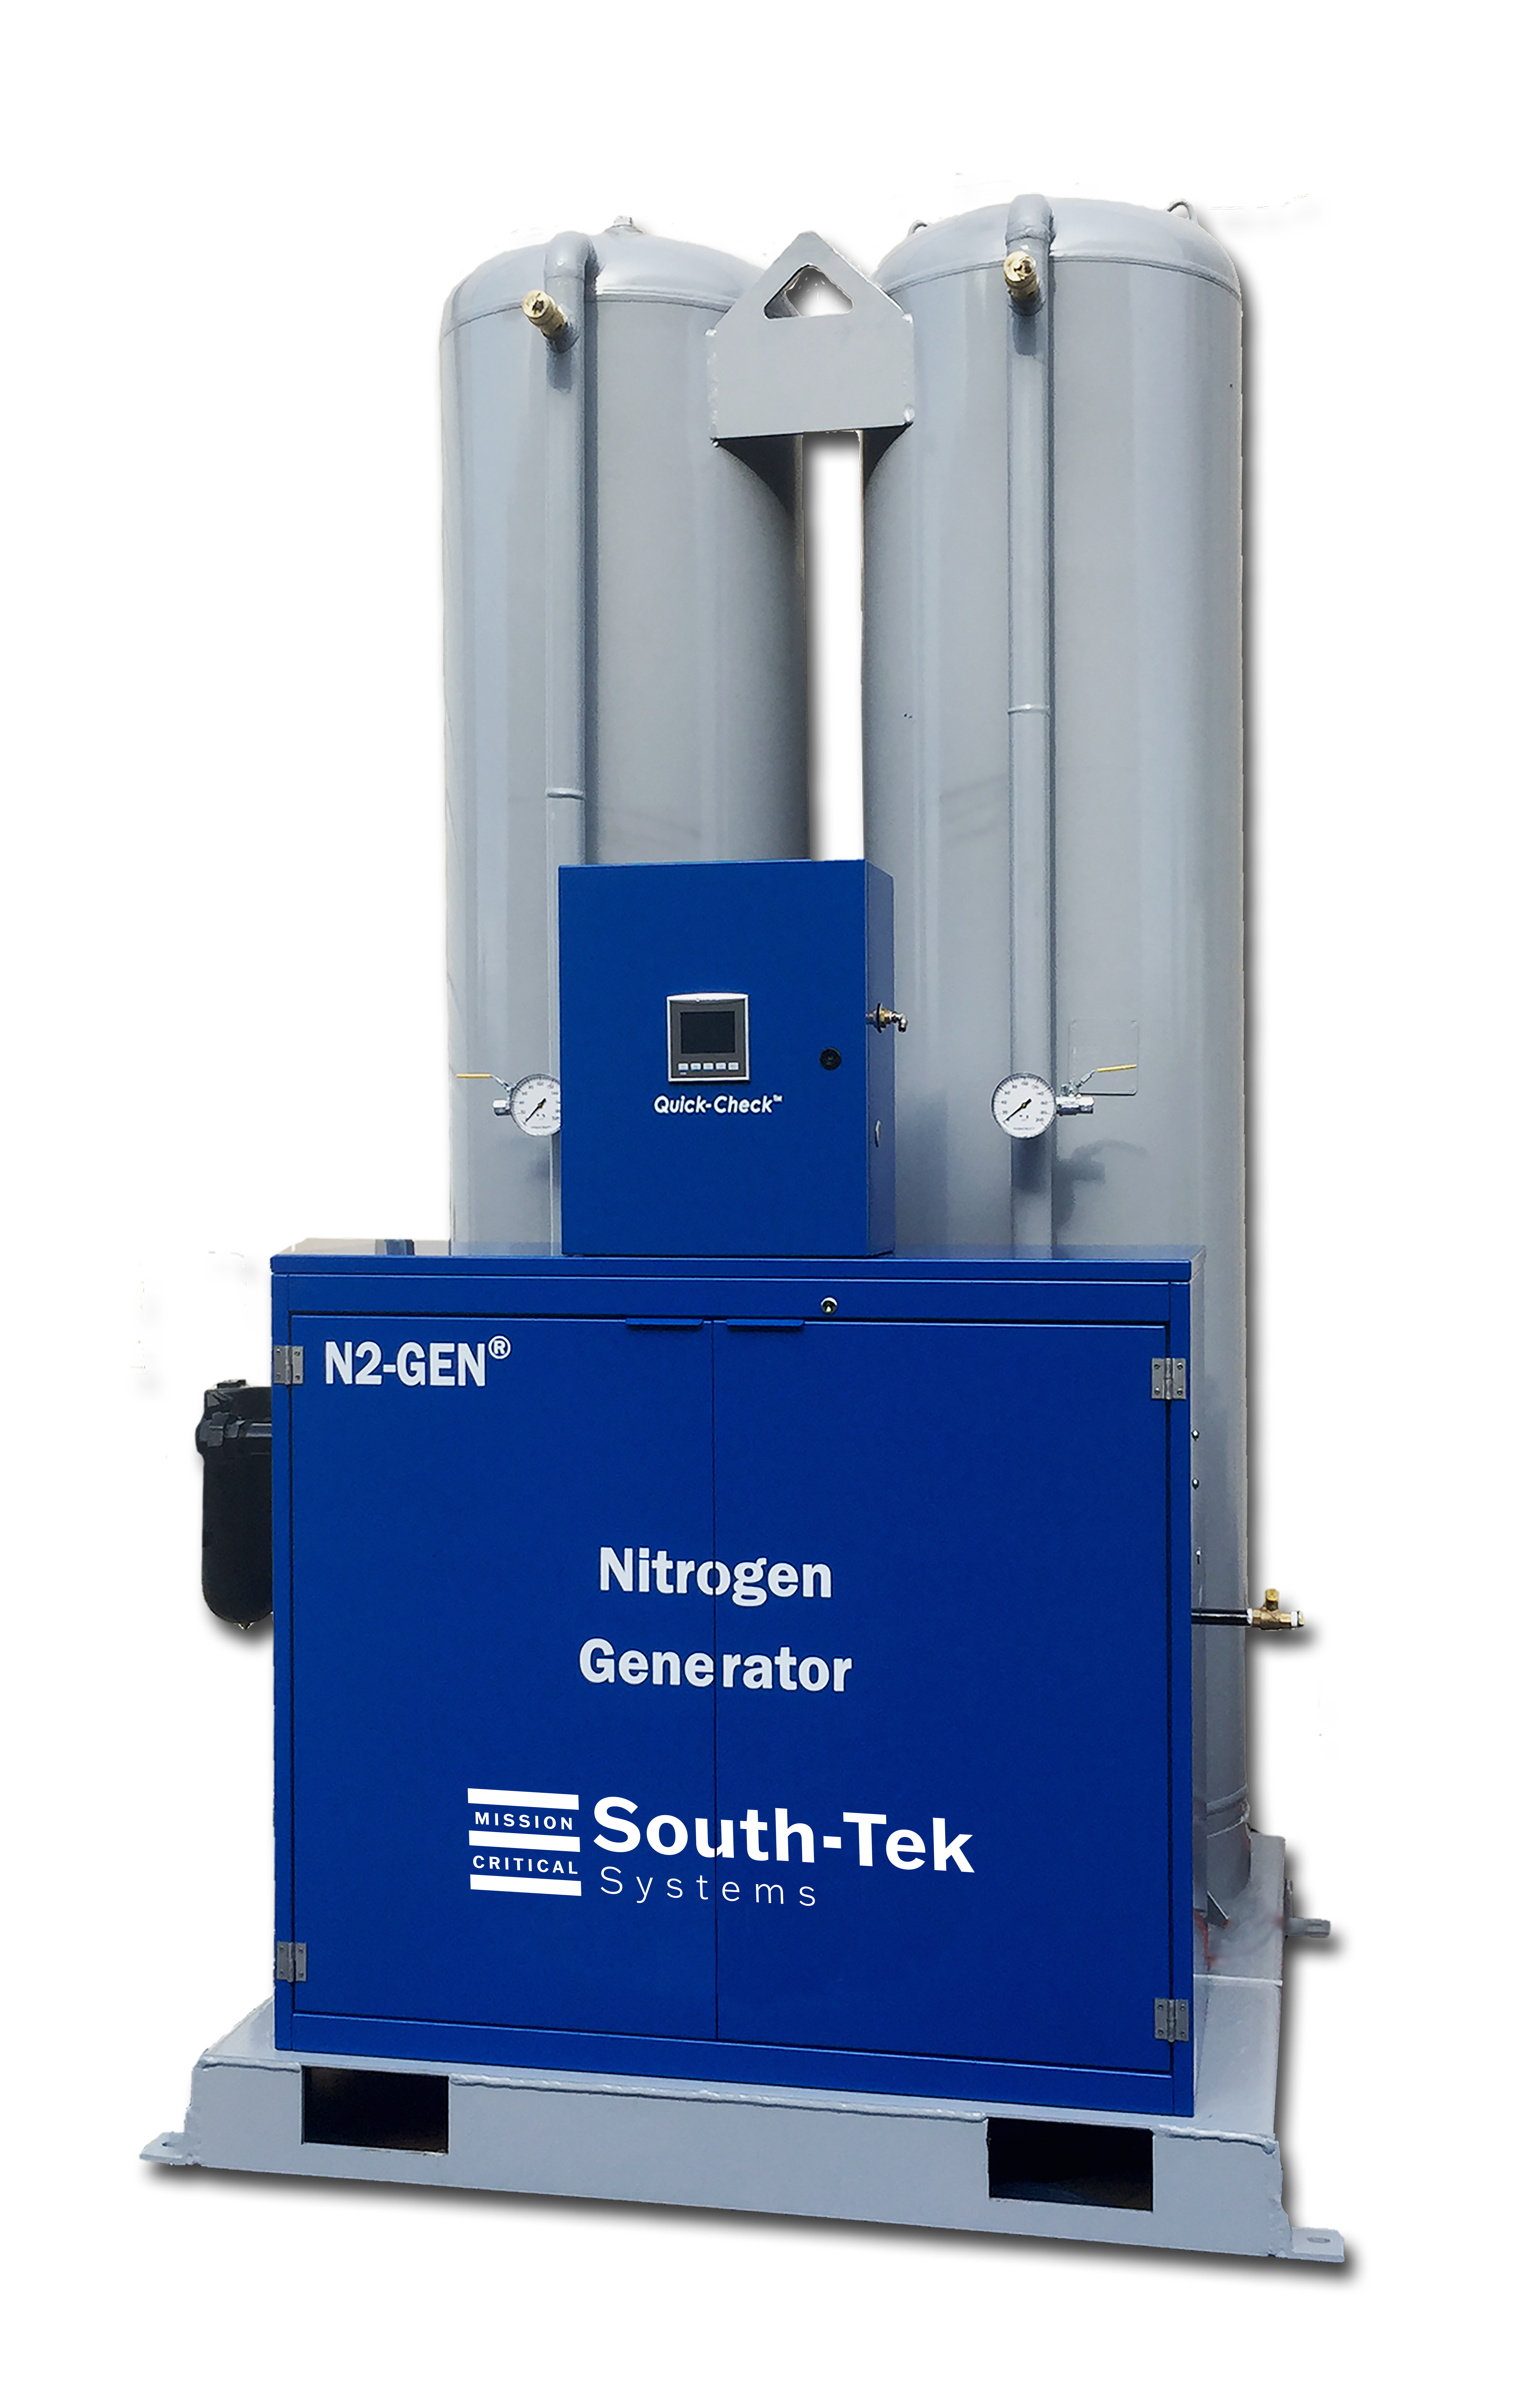 N<sub>2</sub>GEN S - SouthTek Systems